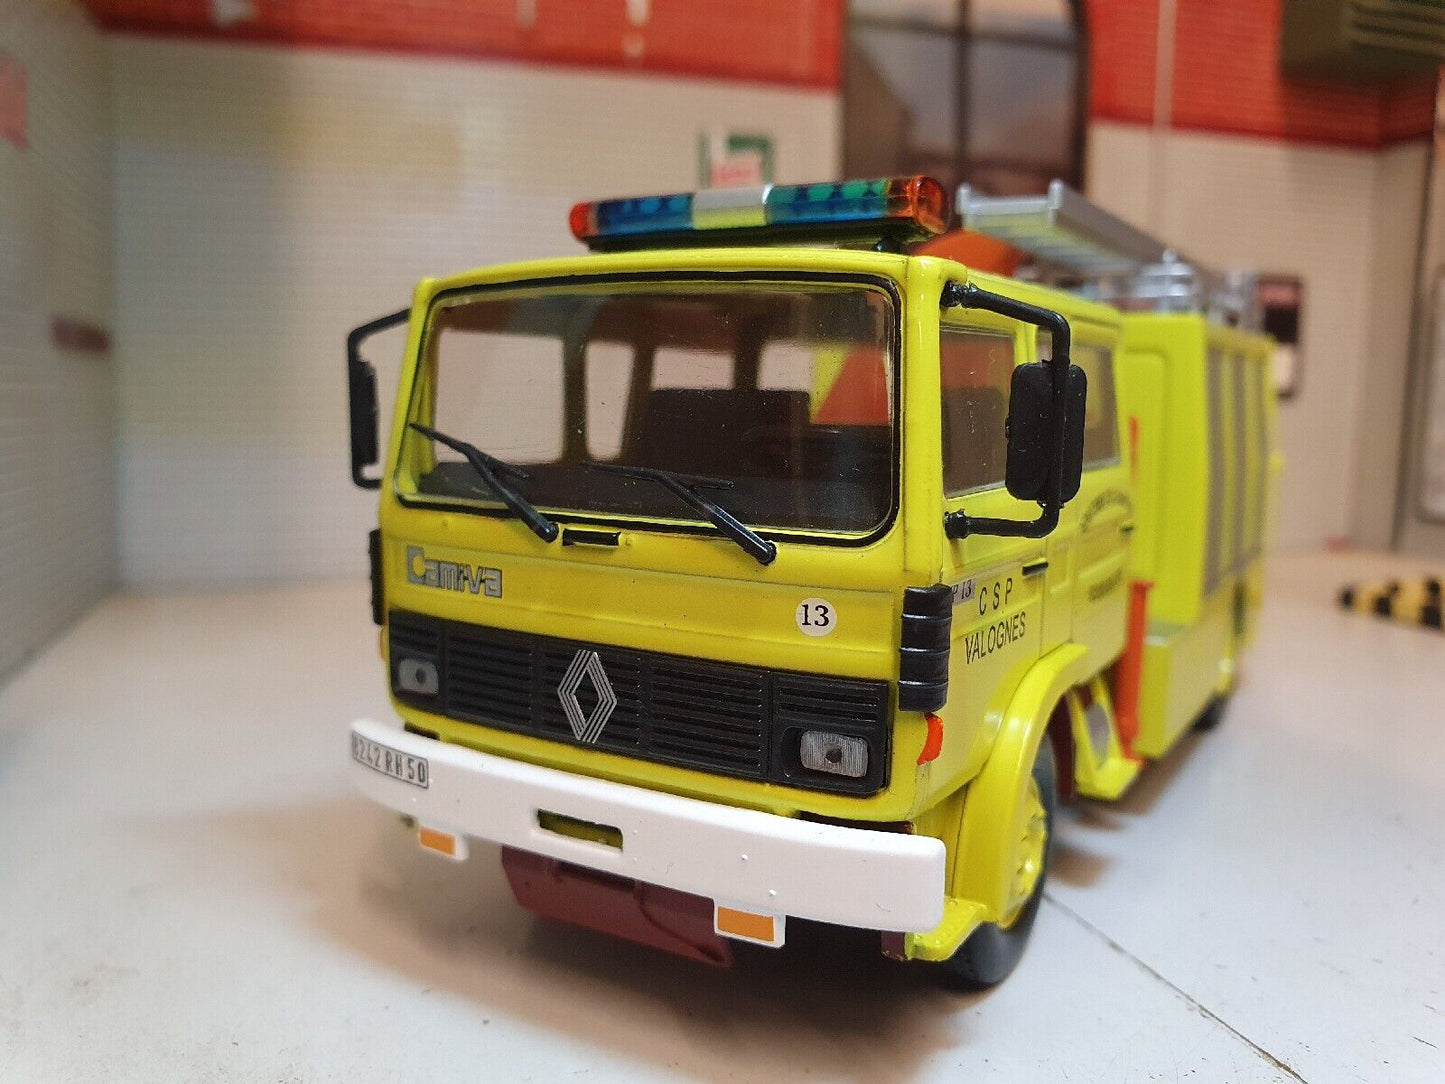 Renault 1994 JP13 Fire Engine Dept Road Rescue 1982 Midliner 1:43